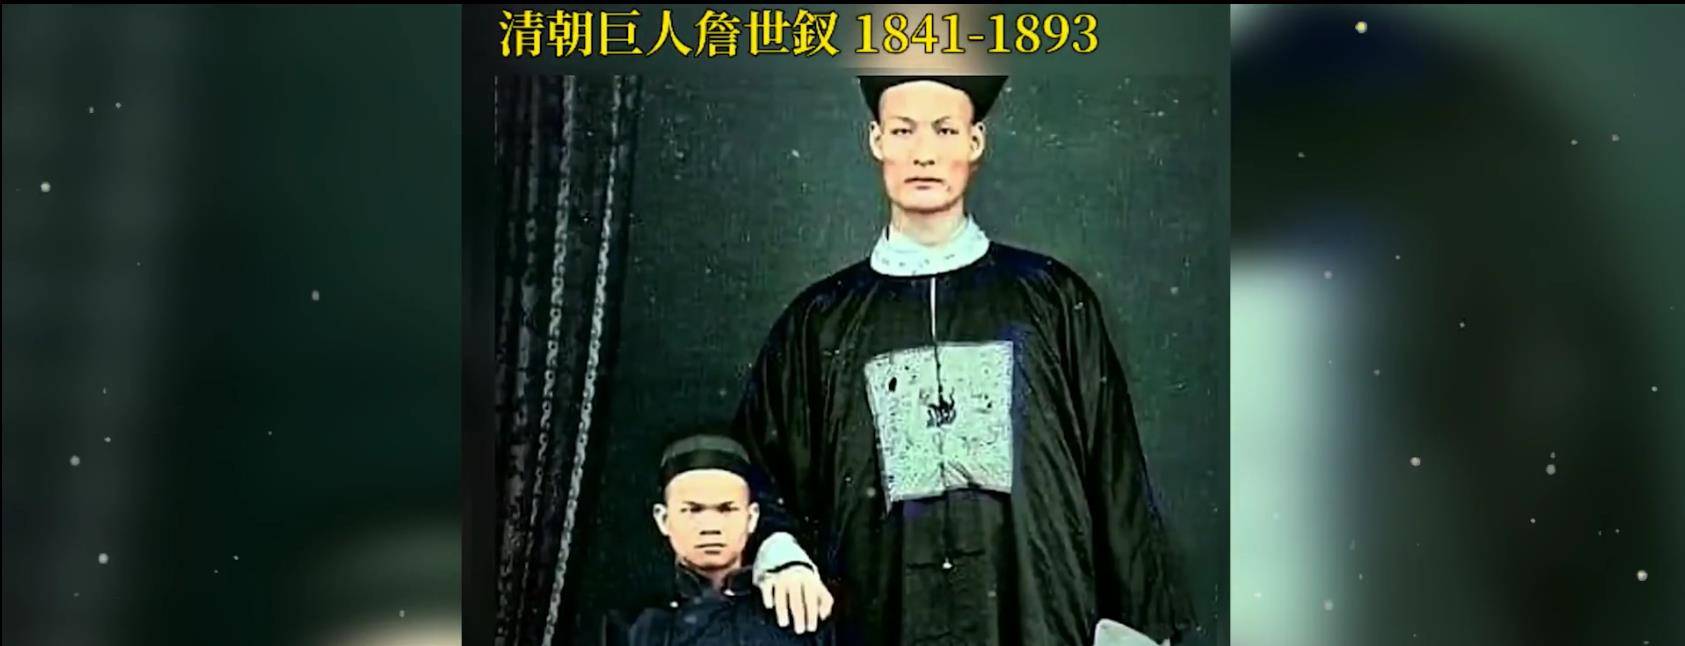 亚洲第一巨人张俊才:身高242米,22年前娶重庆老婆,如今怎样了